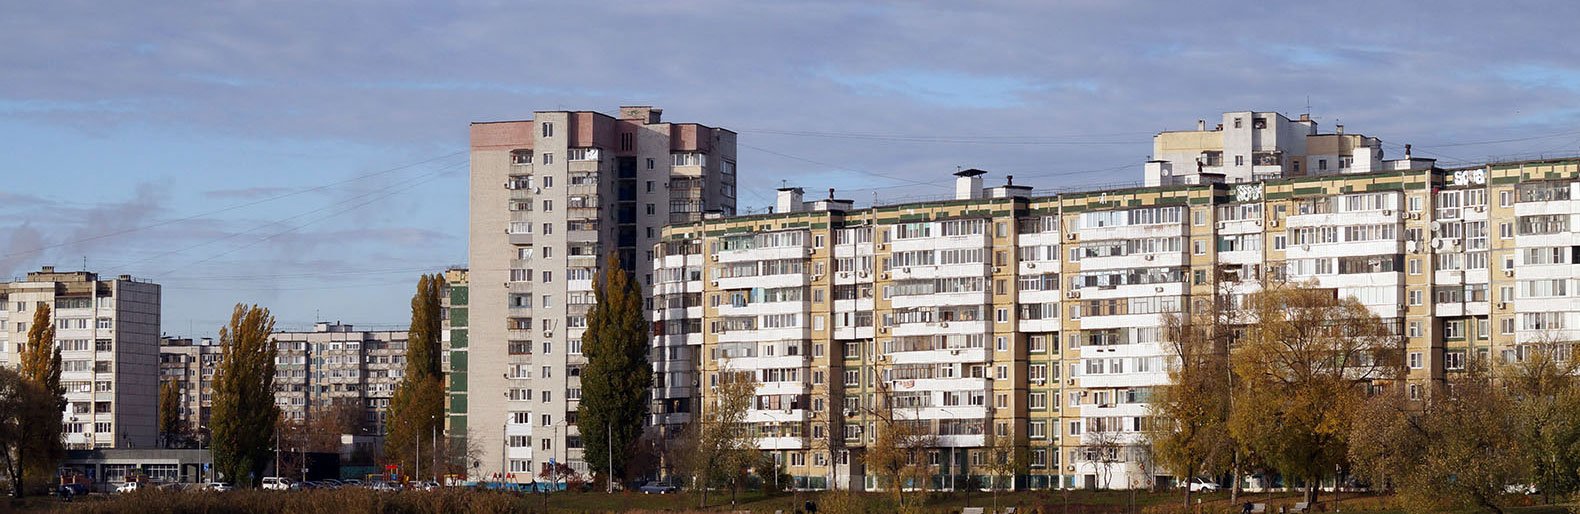 Многоэтажку в Белгороде защитили с помощью умных датчиков